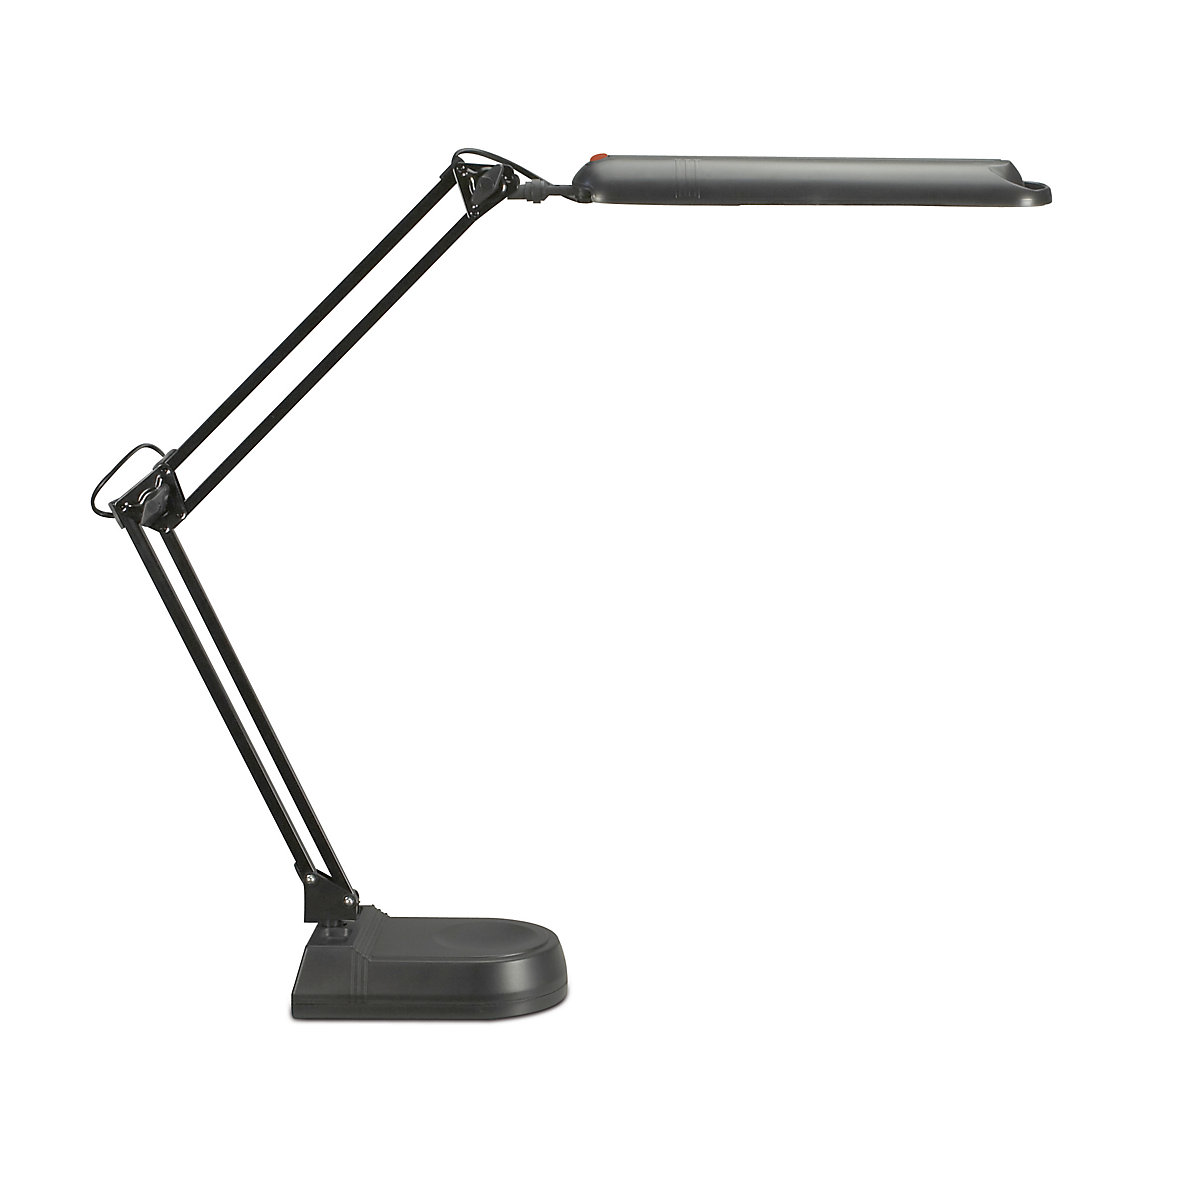 LED lamp, 5800 K, 21 LEDs – MAUL, with base, black-2